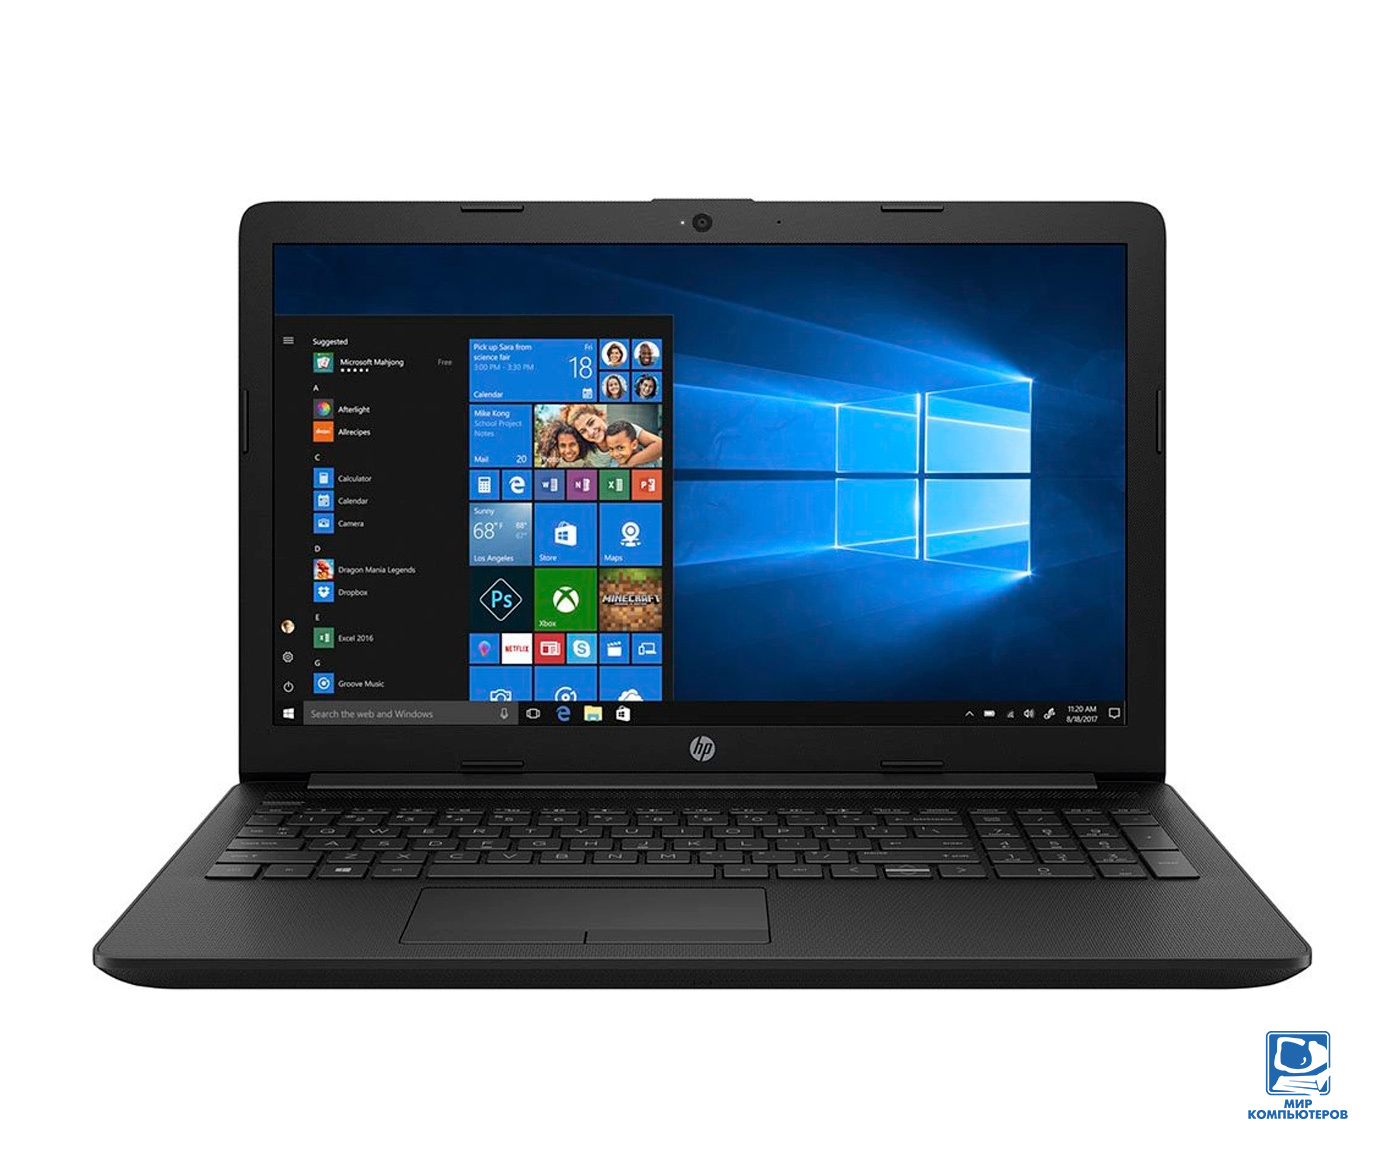 Ноутбук 15.6" HP 250 G7 (i3-8130U/4GB/256GB/FHD) (8AC83EA) Black